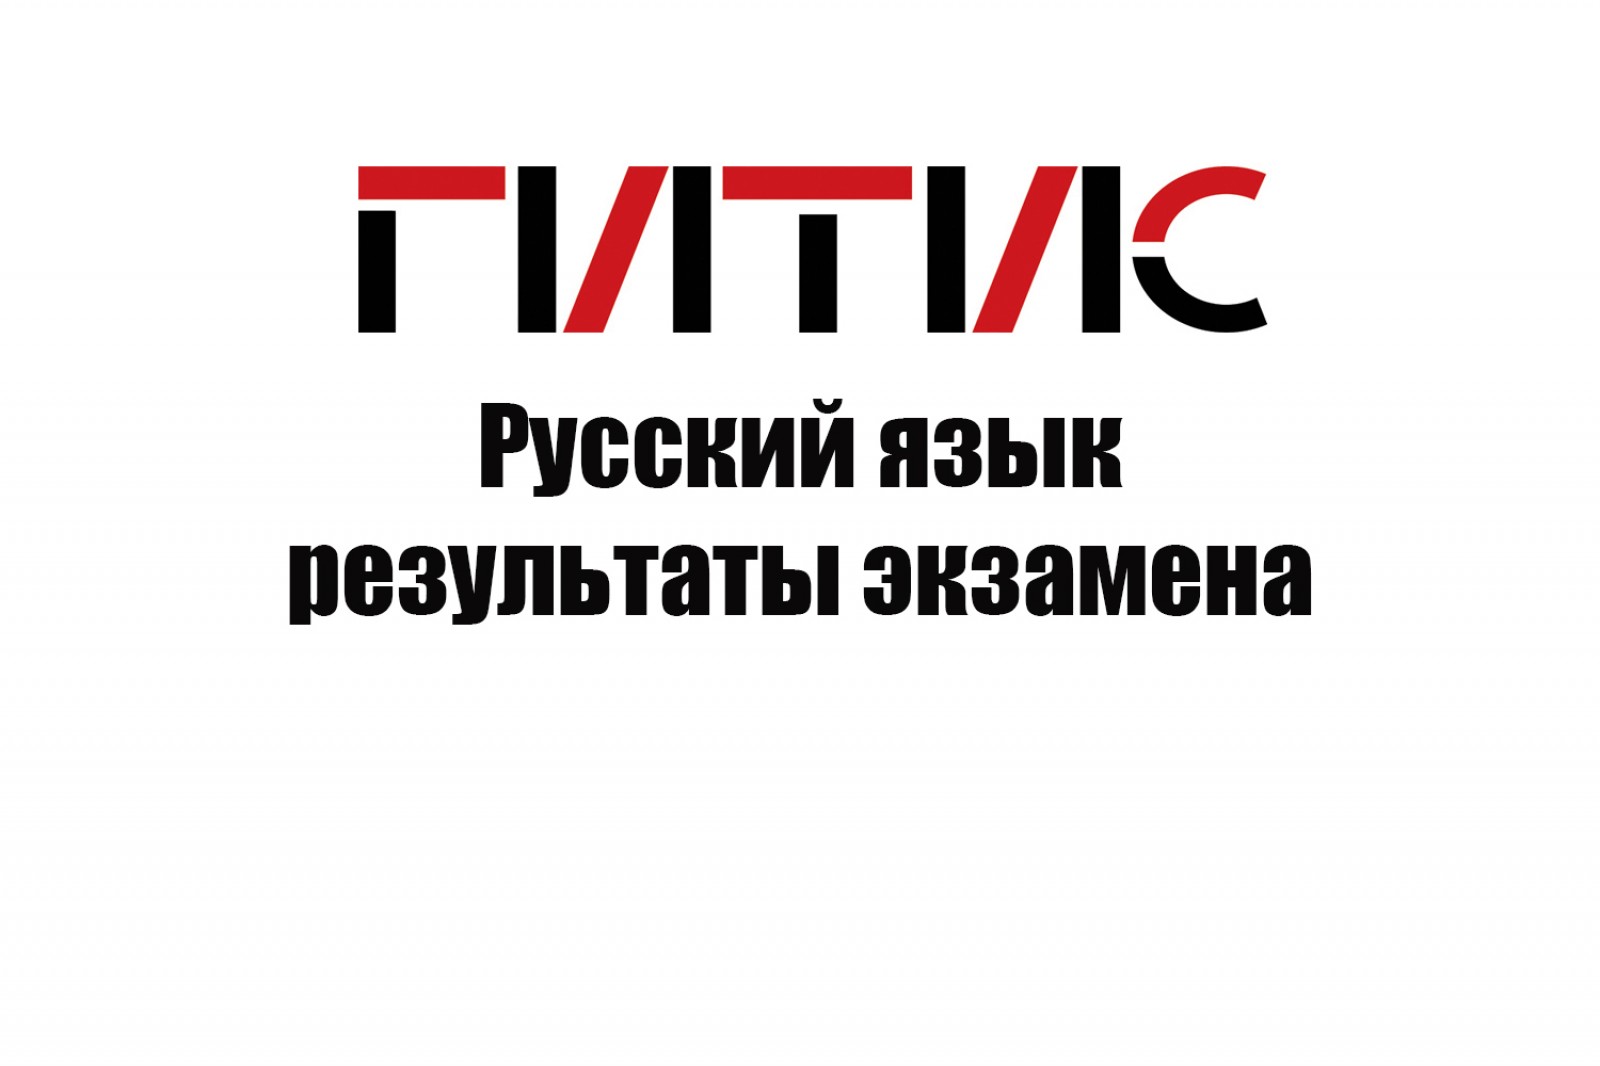 Результаты экзамена по русскому языку от 29 августа 2020